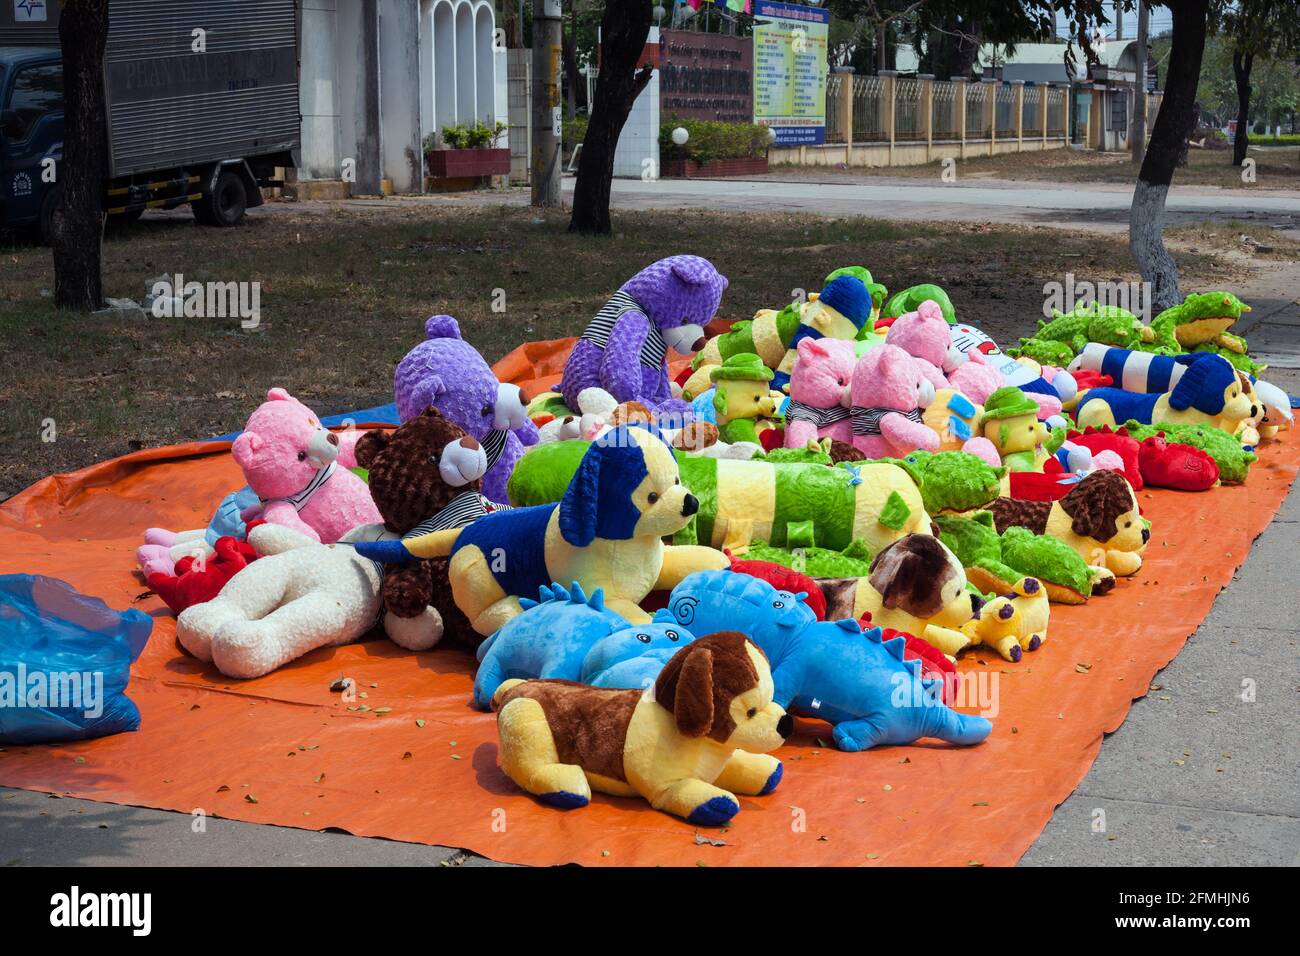 Children's cuddly animals for sale on sidewalk, Hoi An, Vietnam Stock Photo